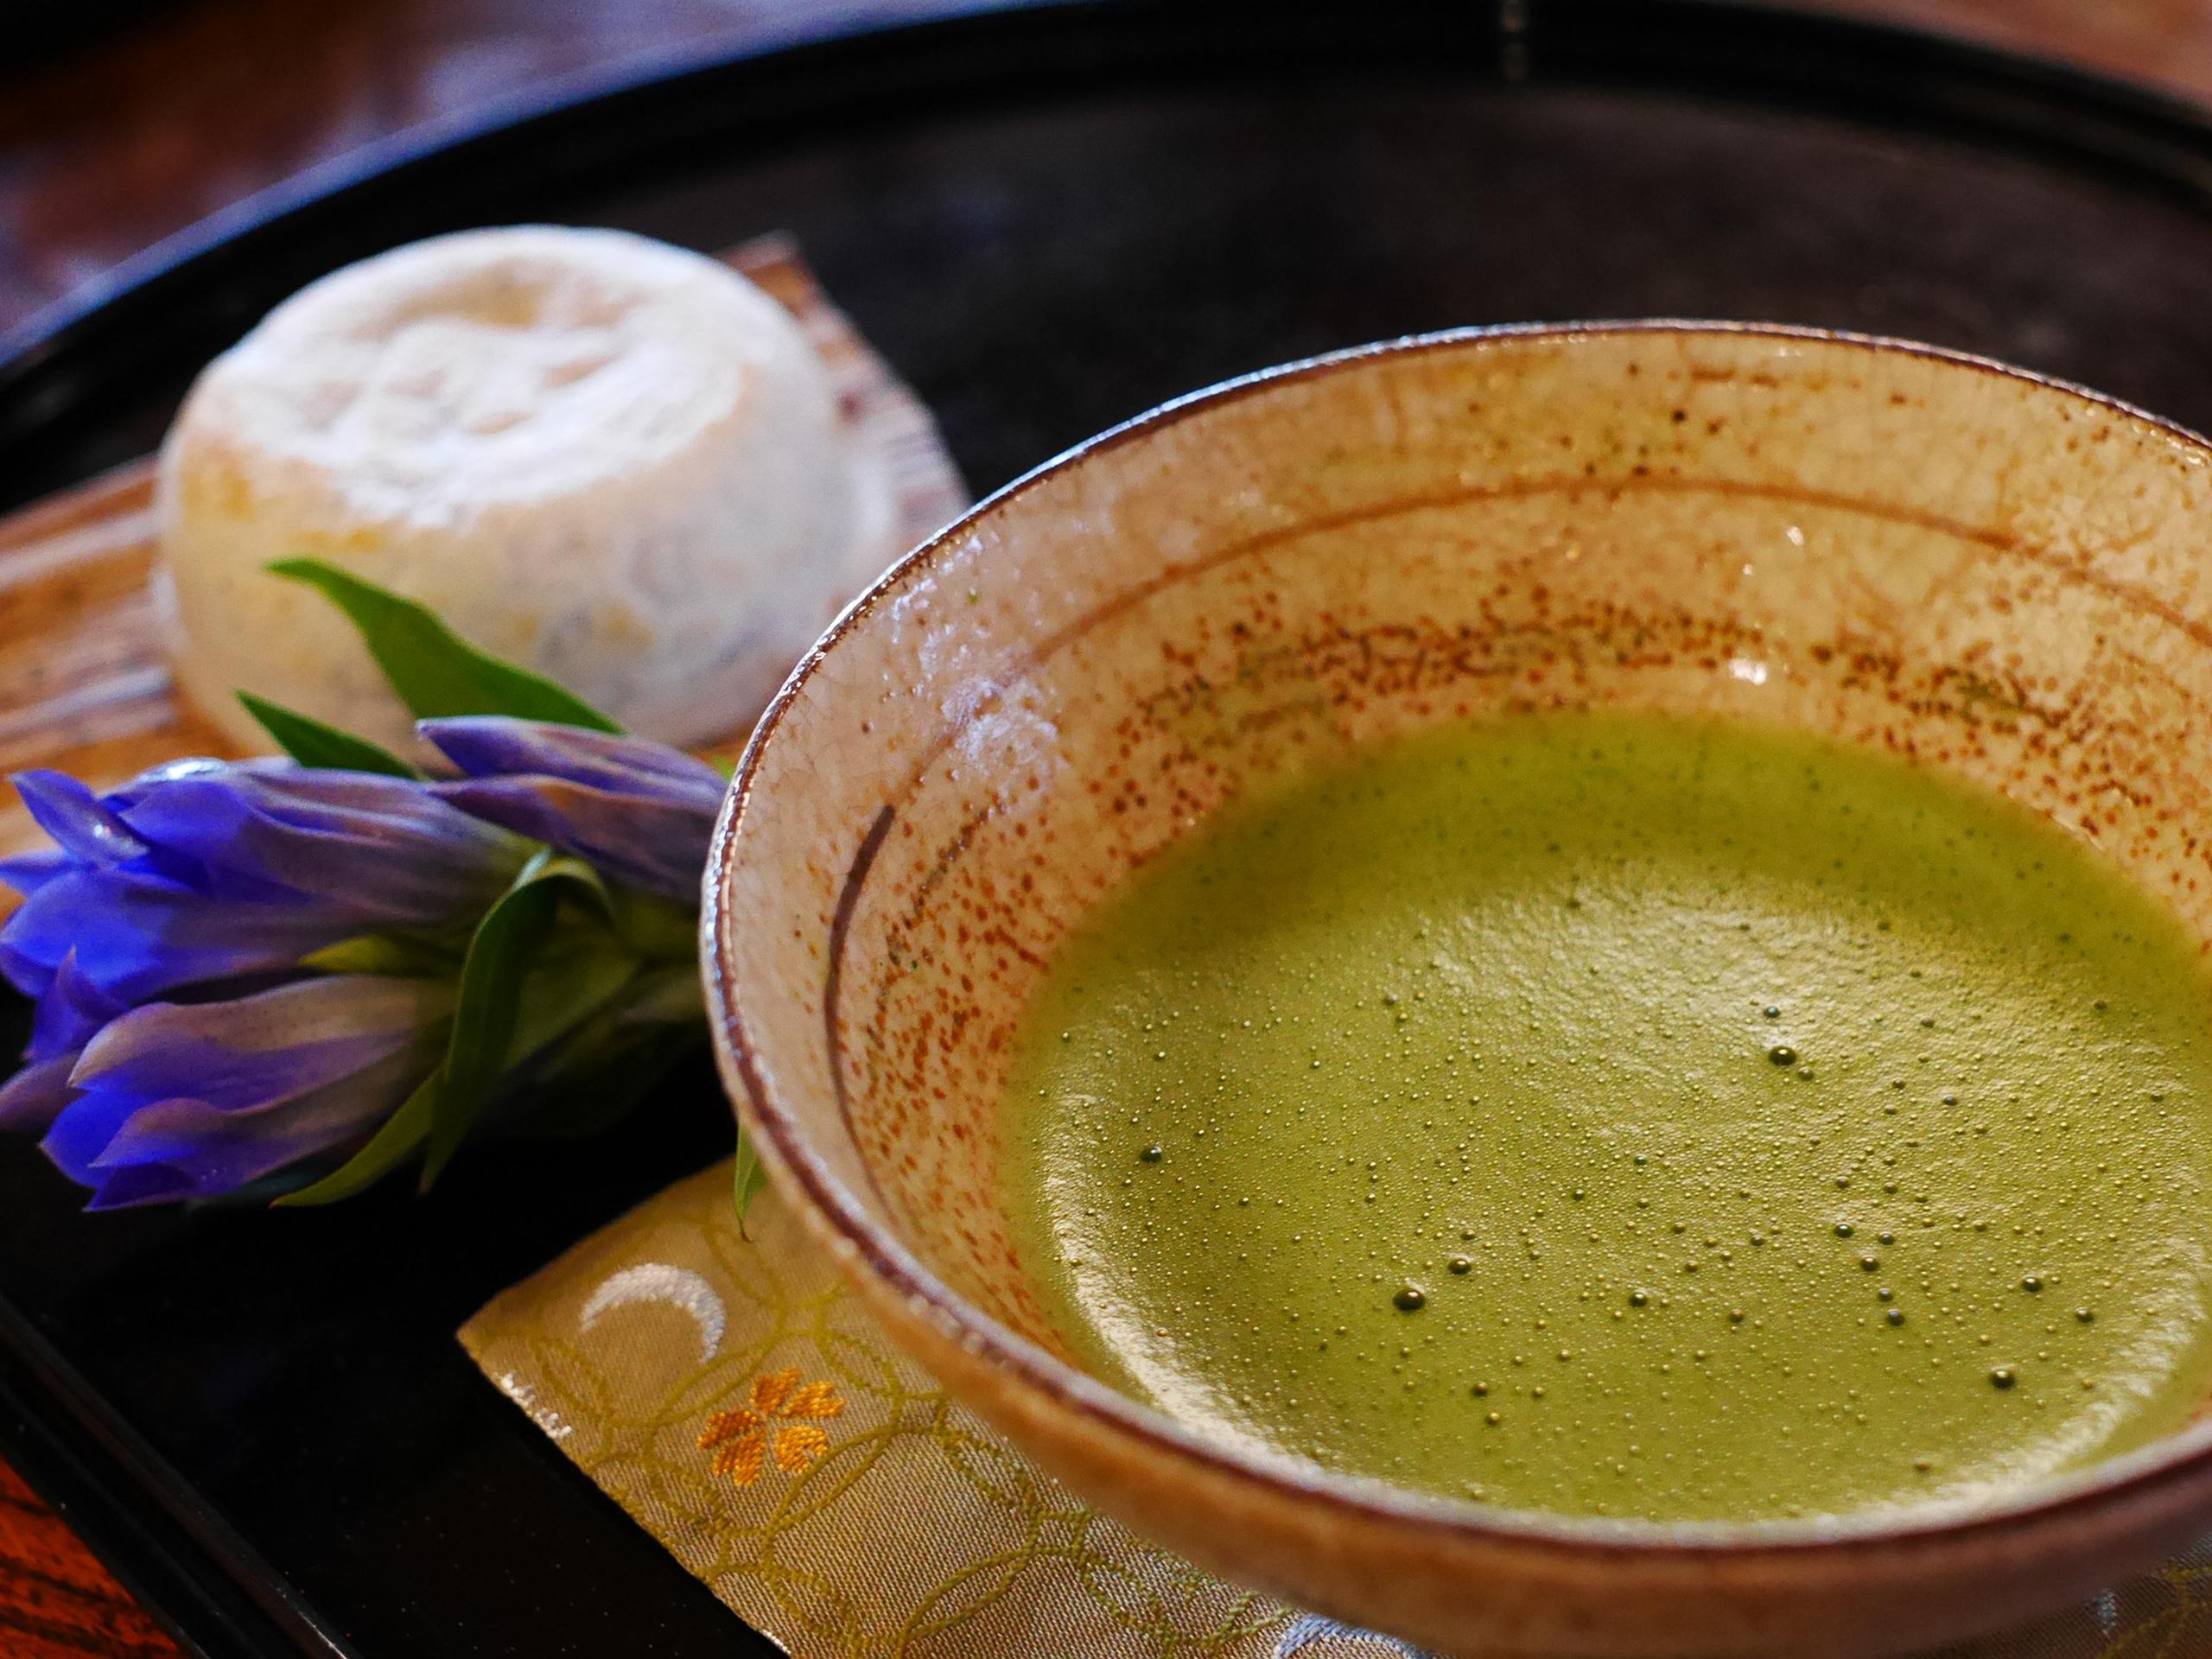 El matcha es la forma más concentrada y pura de las hojas de té verde, potencializando sus beneficios. (Pixabay)